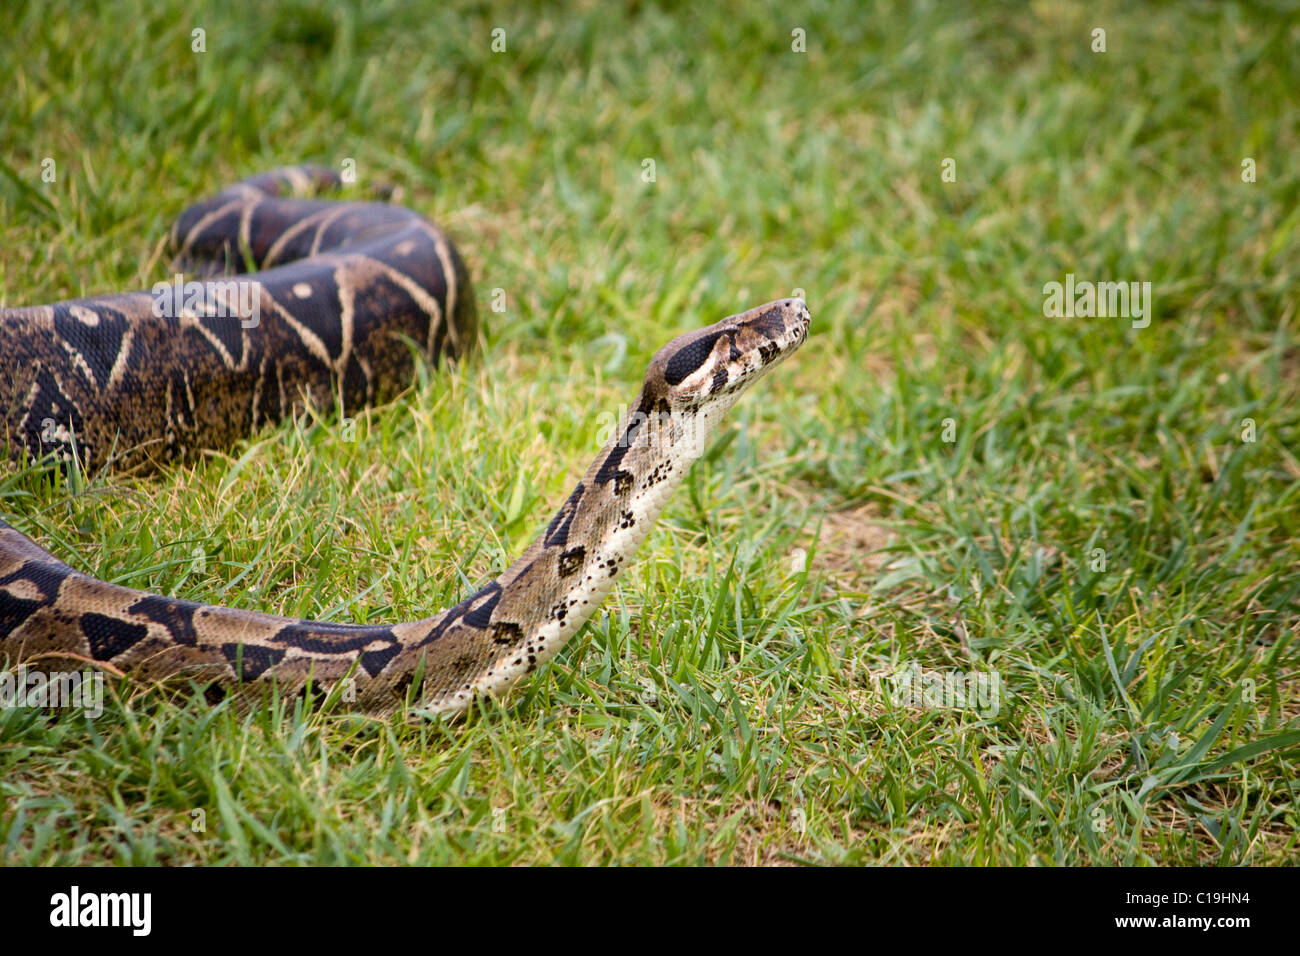 Vista de la cabeza de una serpiente boa constrictor tratando a olfatear el aire. Foto de stock